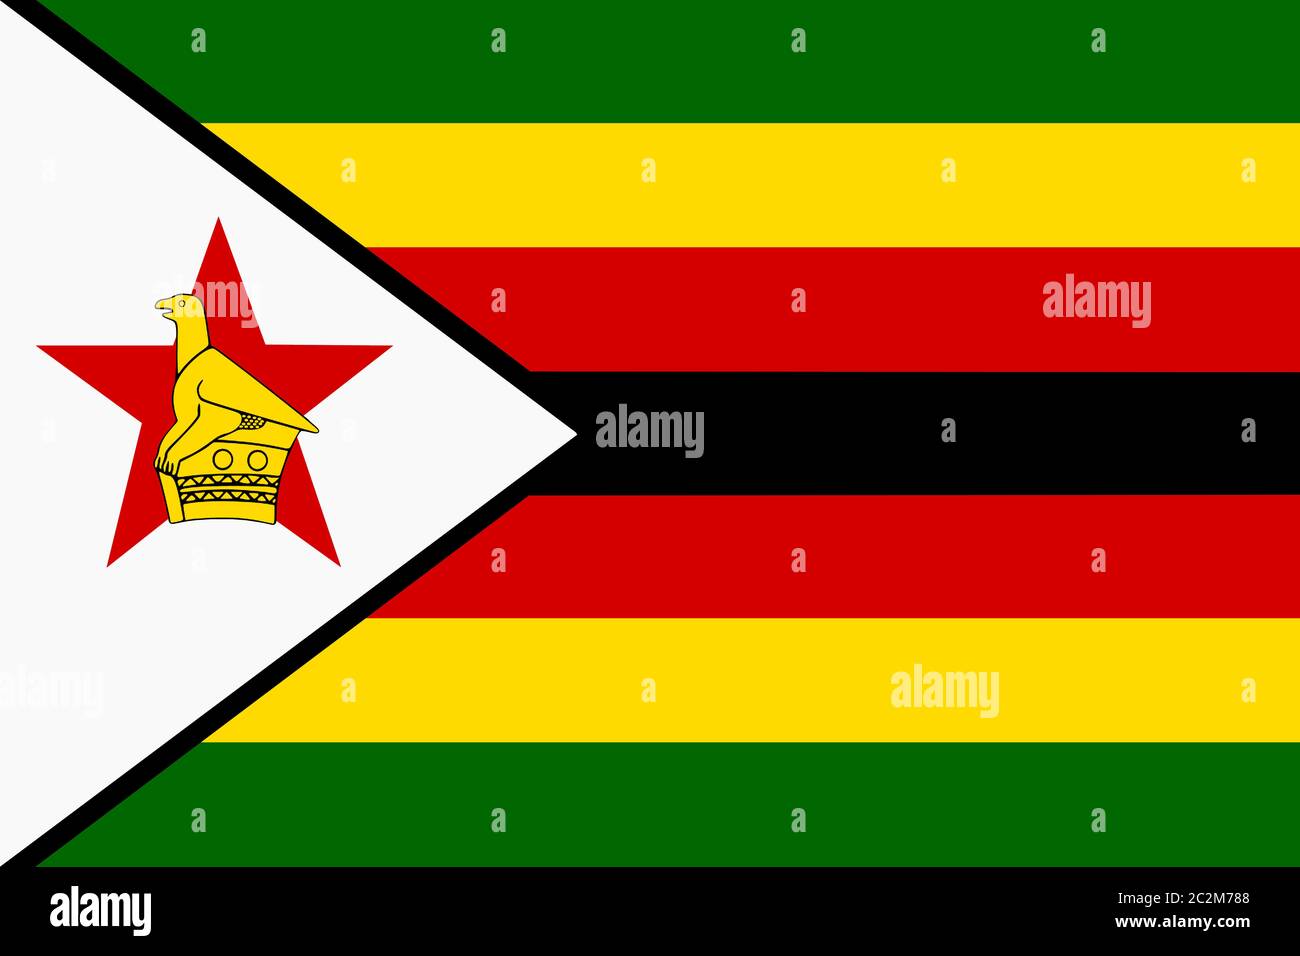 Eines Hintergrundbildes Flagge Simbabwe Afrika rot schwarz gelb weiß grün  Stockfotografie - Alamy